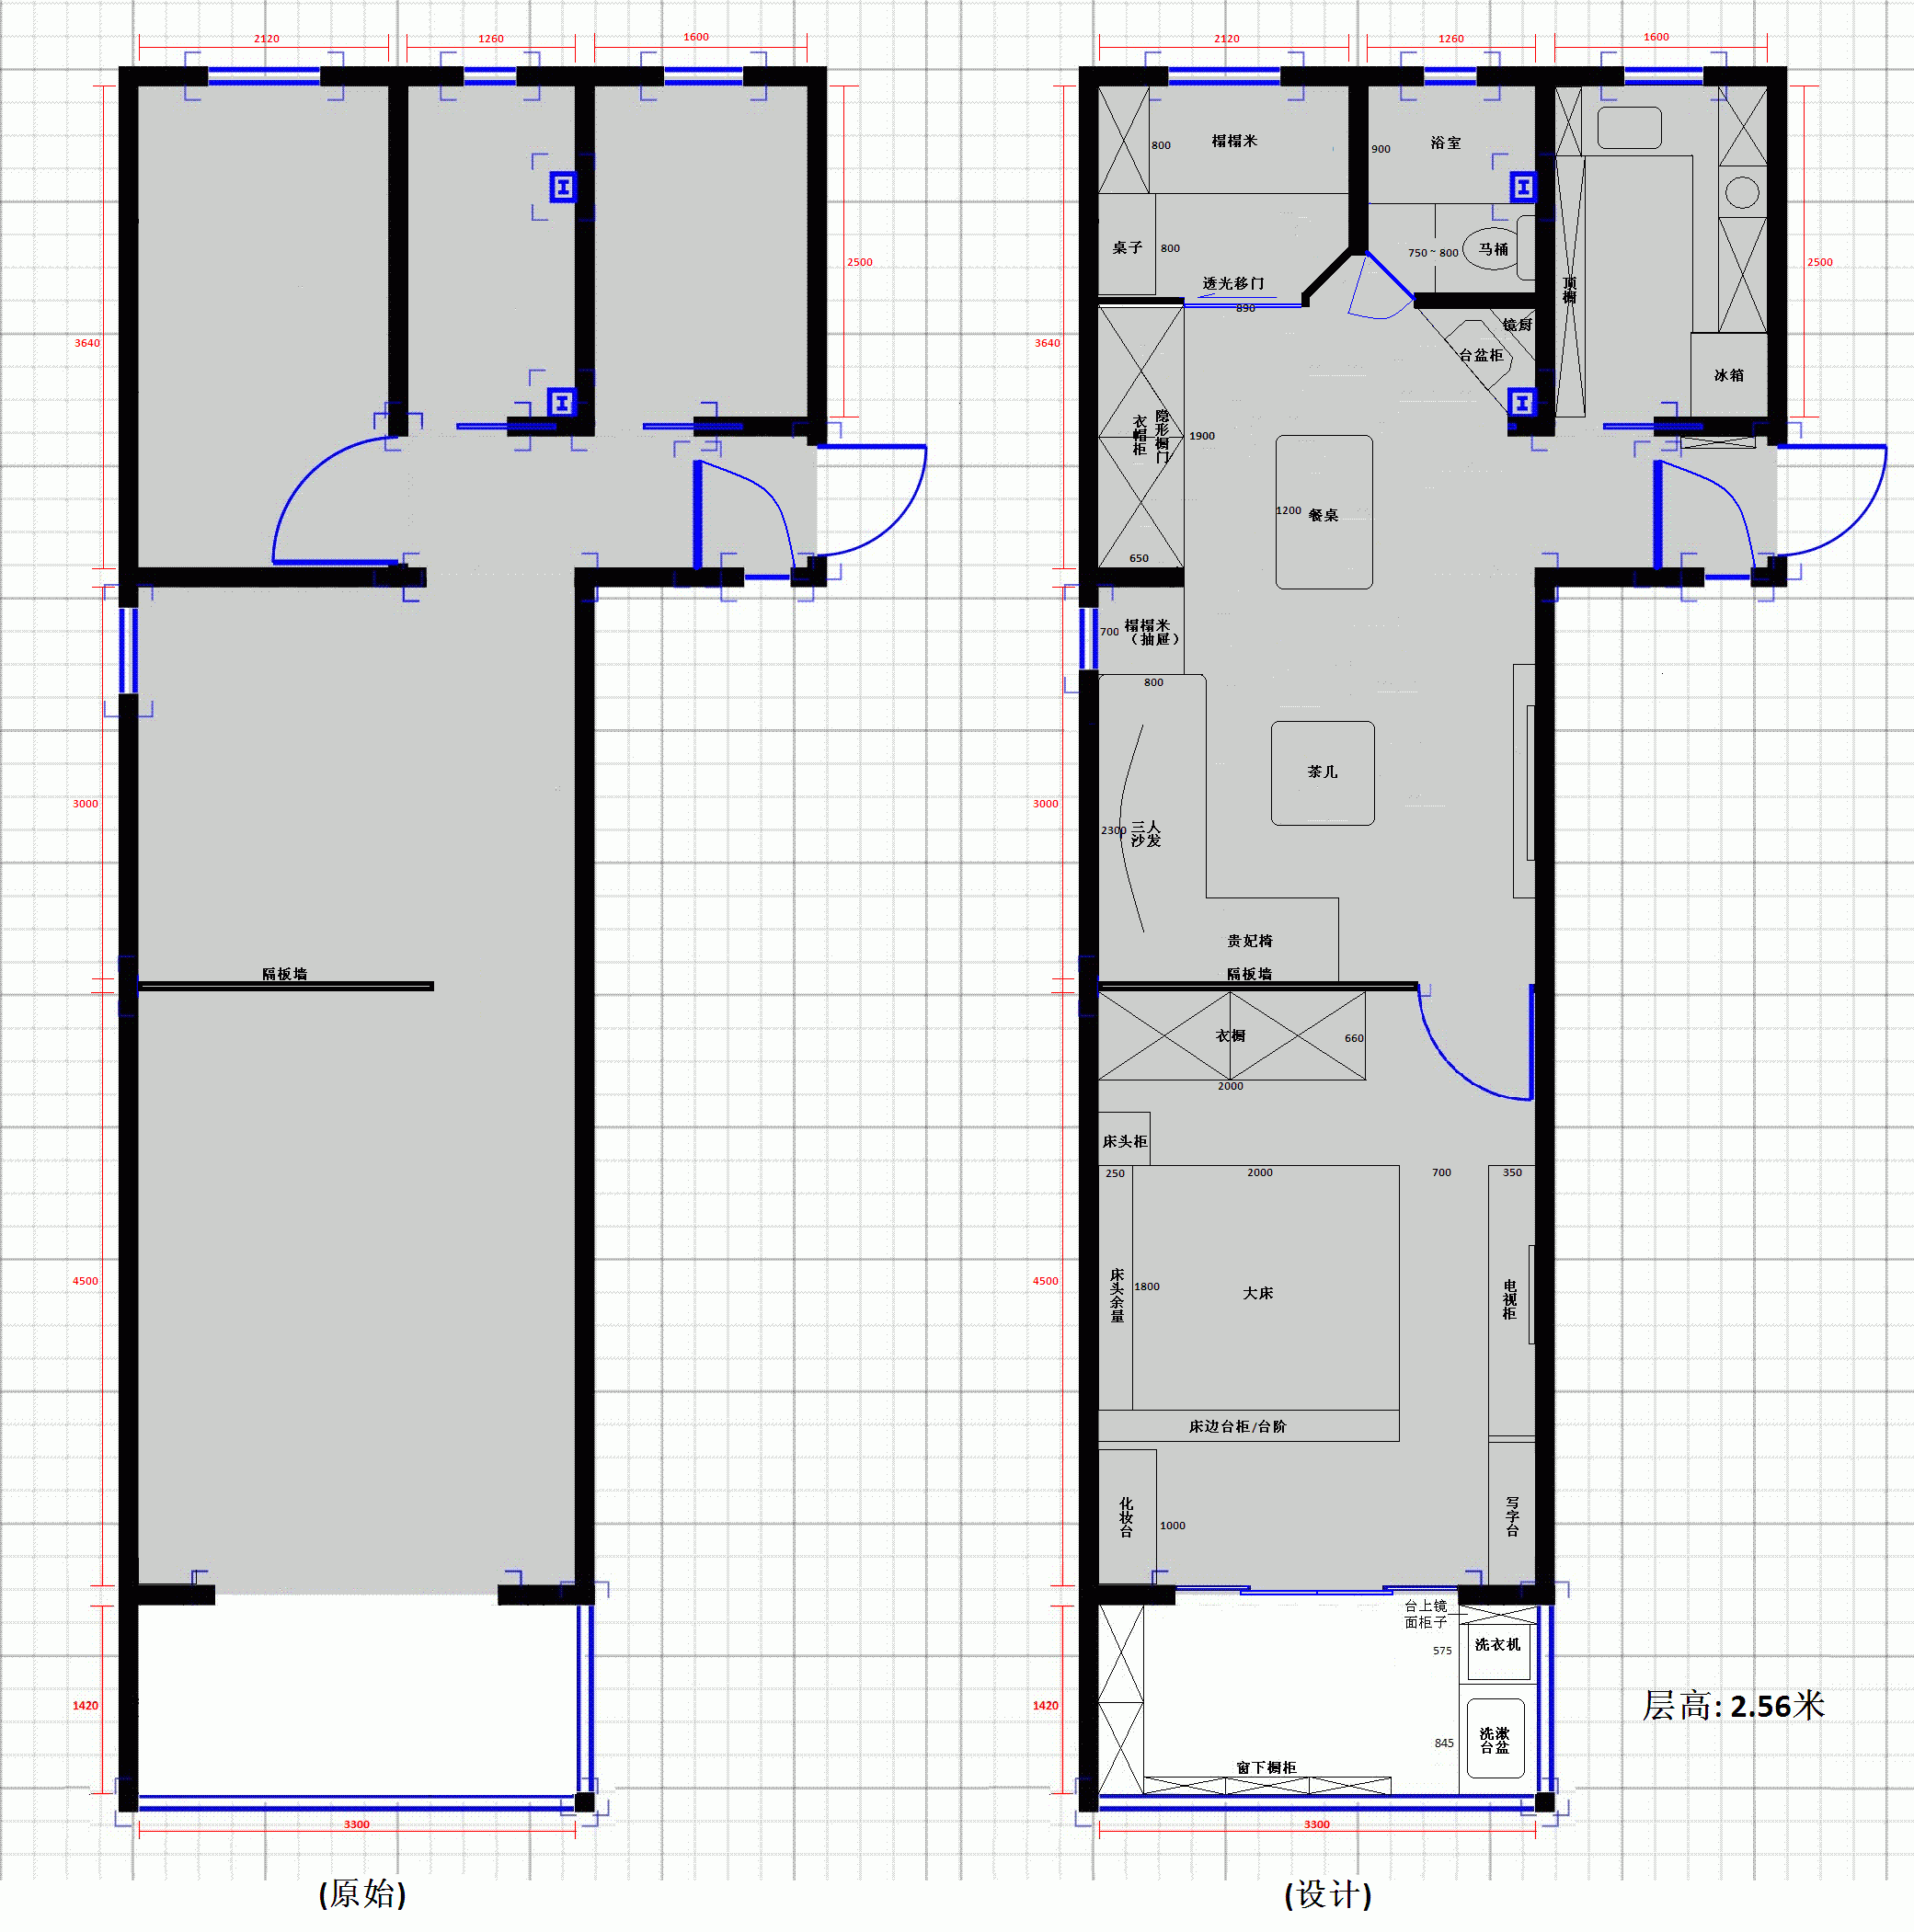 两室一厅60平米老房子,自己设计的平面图,请大家看看合理吗?